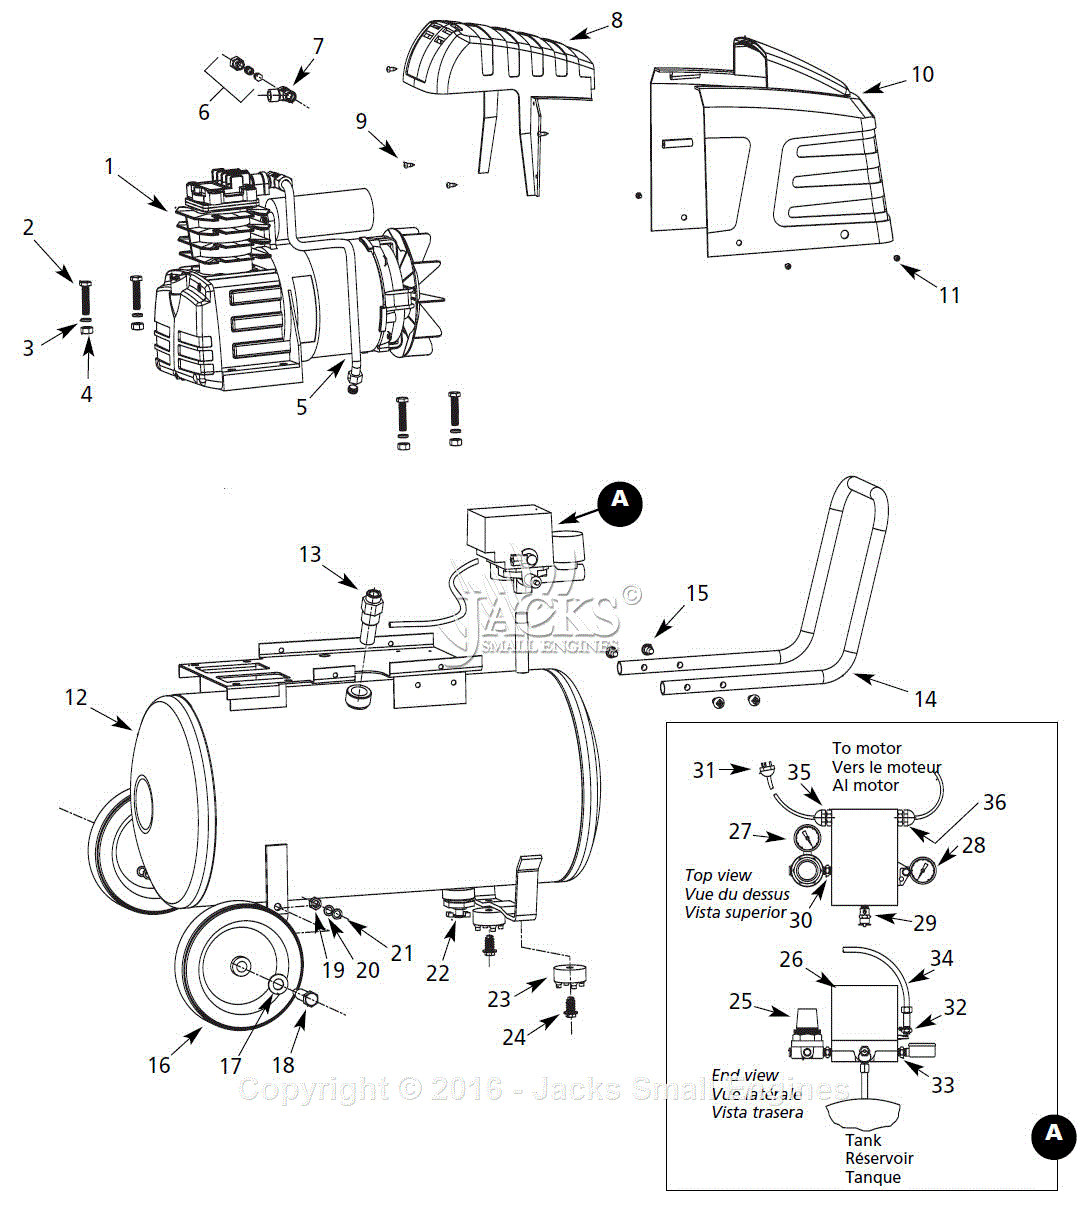 Campbell Hausfeld Air Compressor Parts Diagram Campbell Hausfeld Hl5501 Parts Diagram For Air Compressor Parts